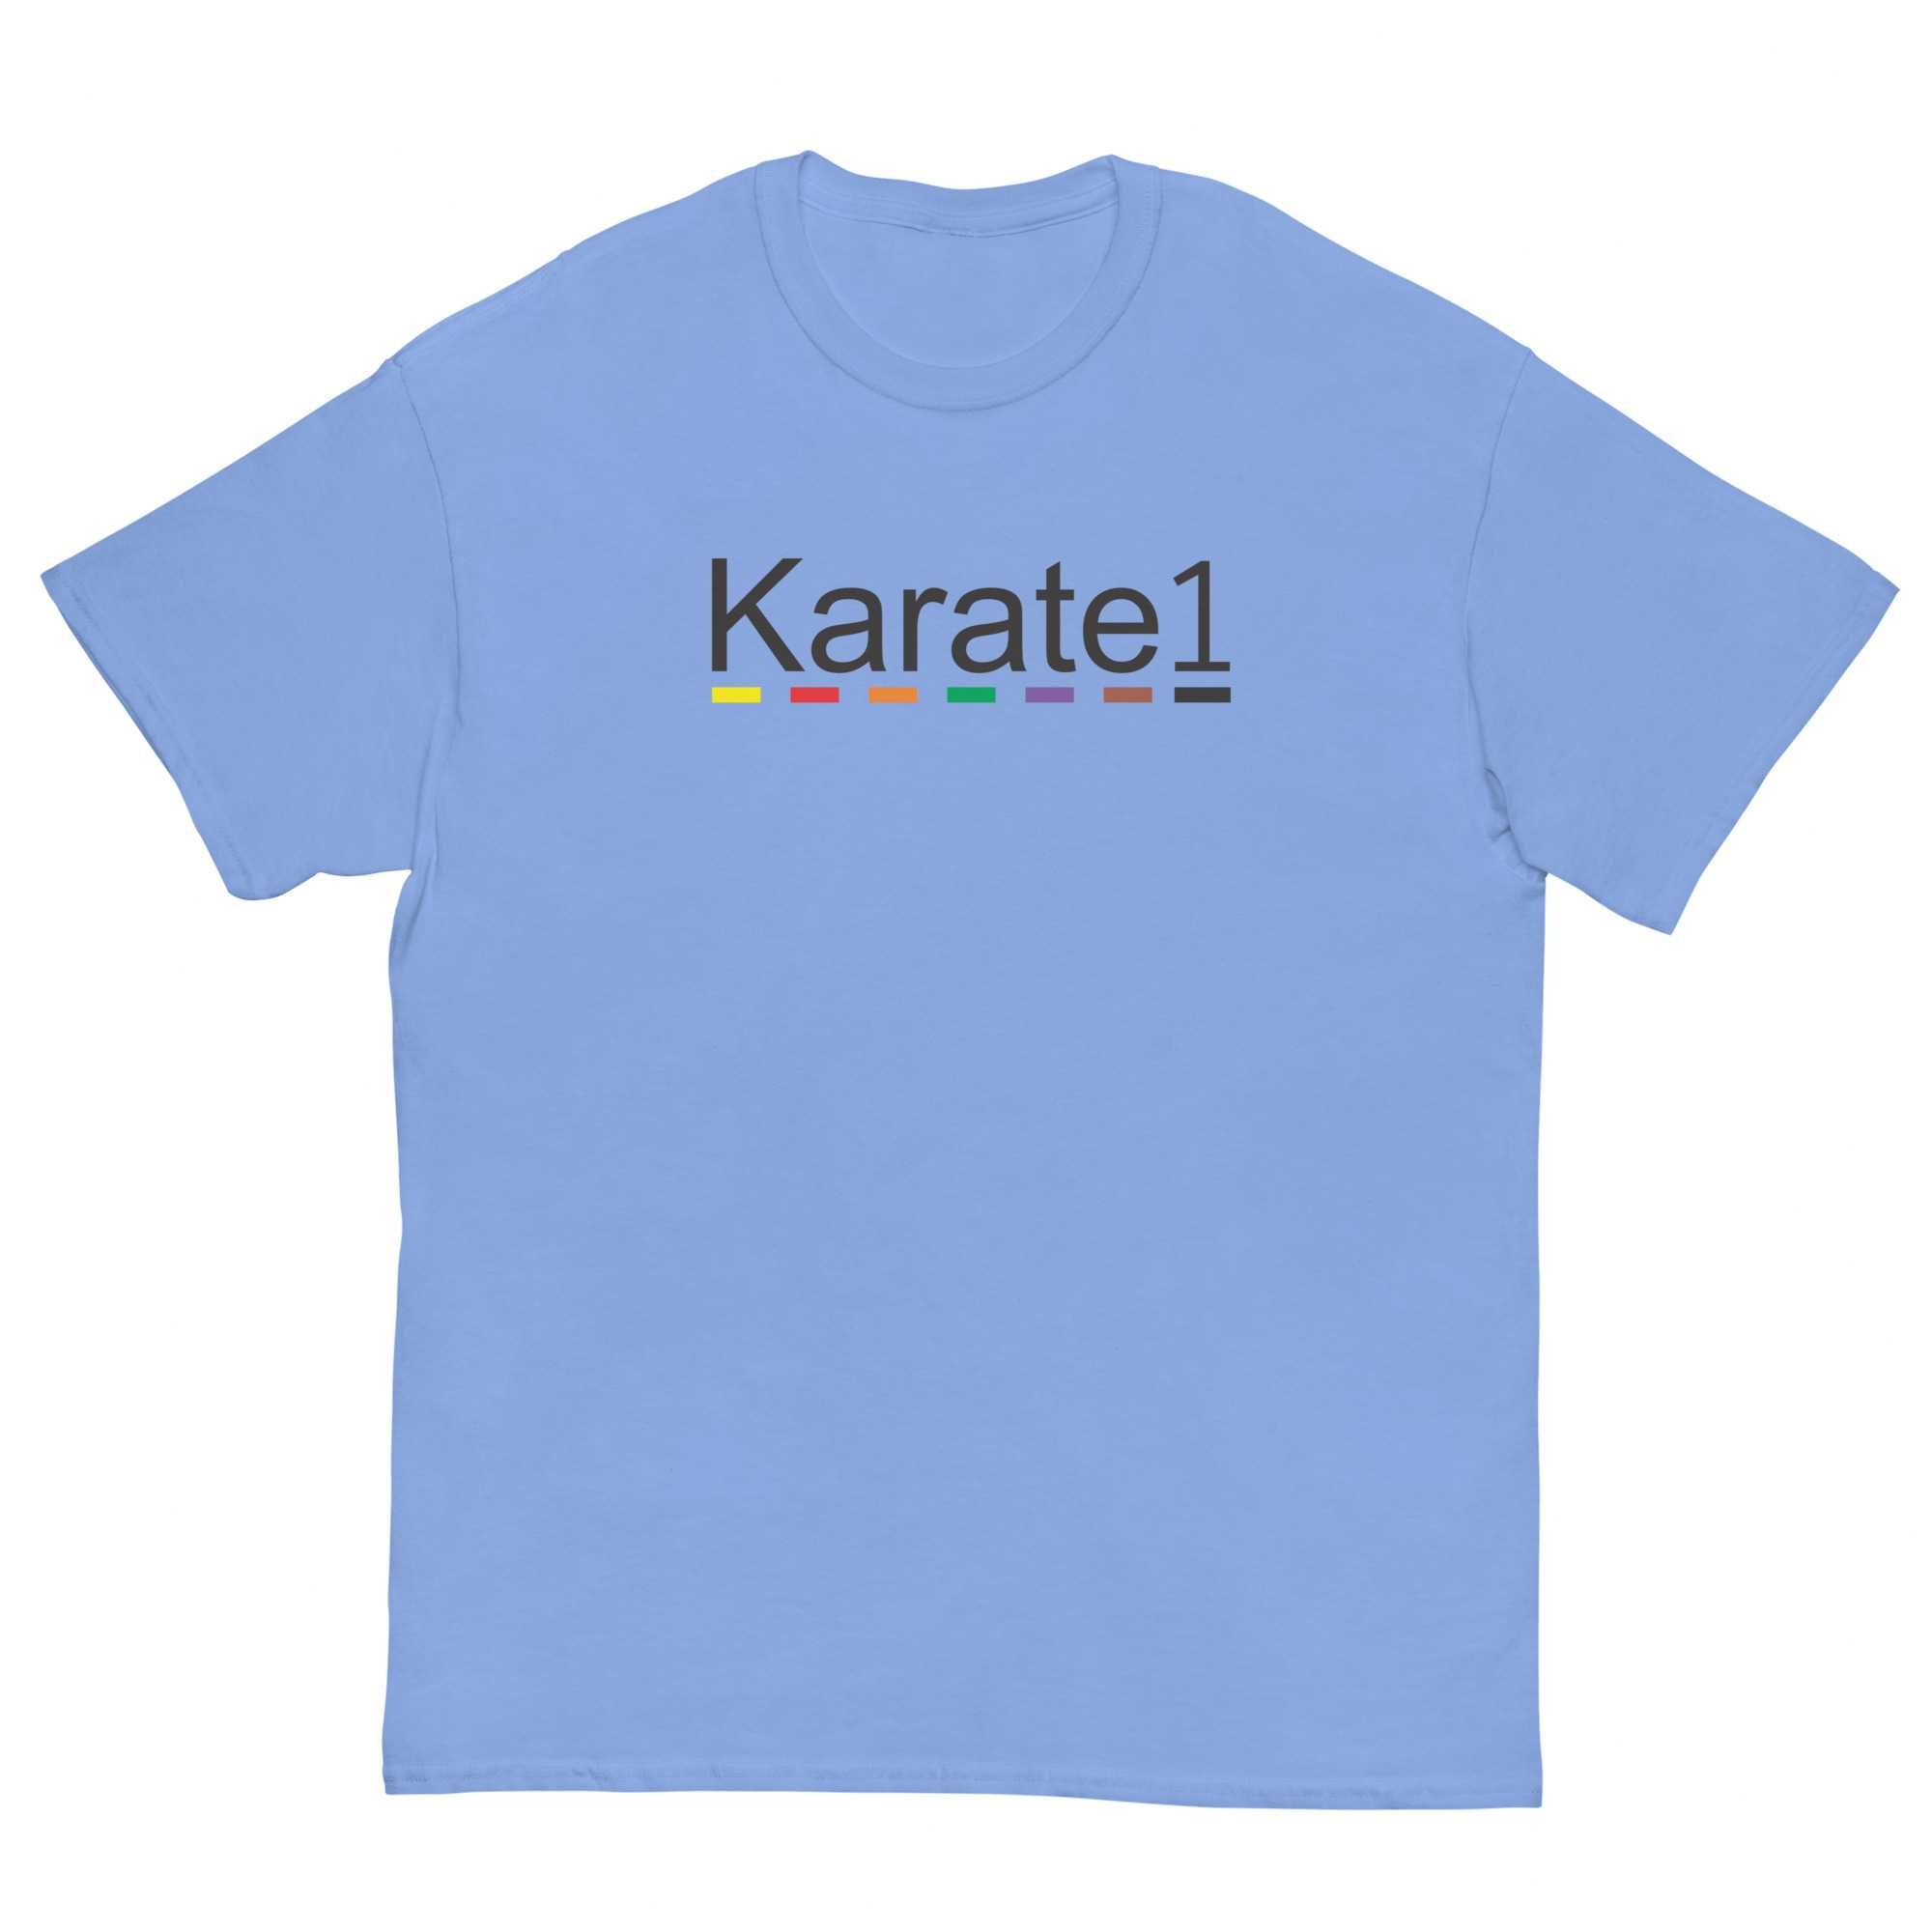 Camisas com referencia a Karate